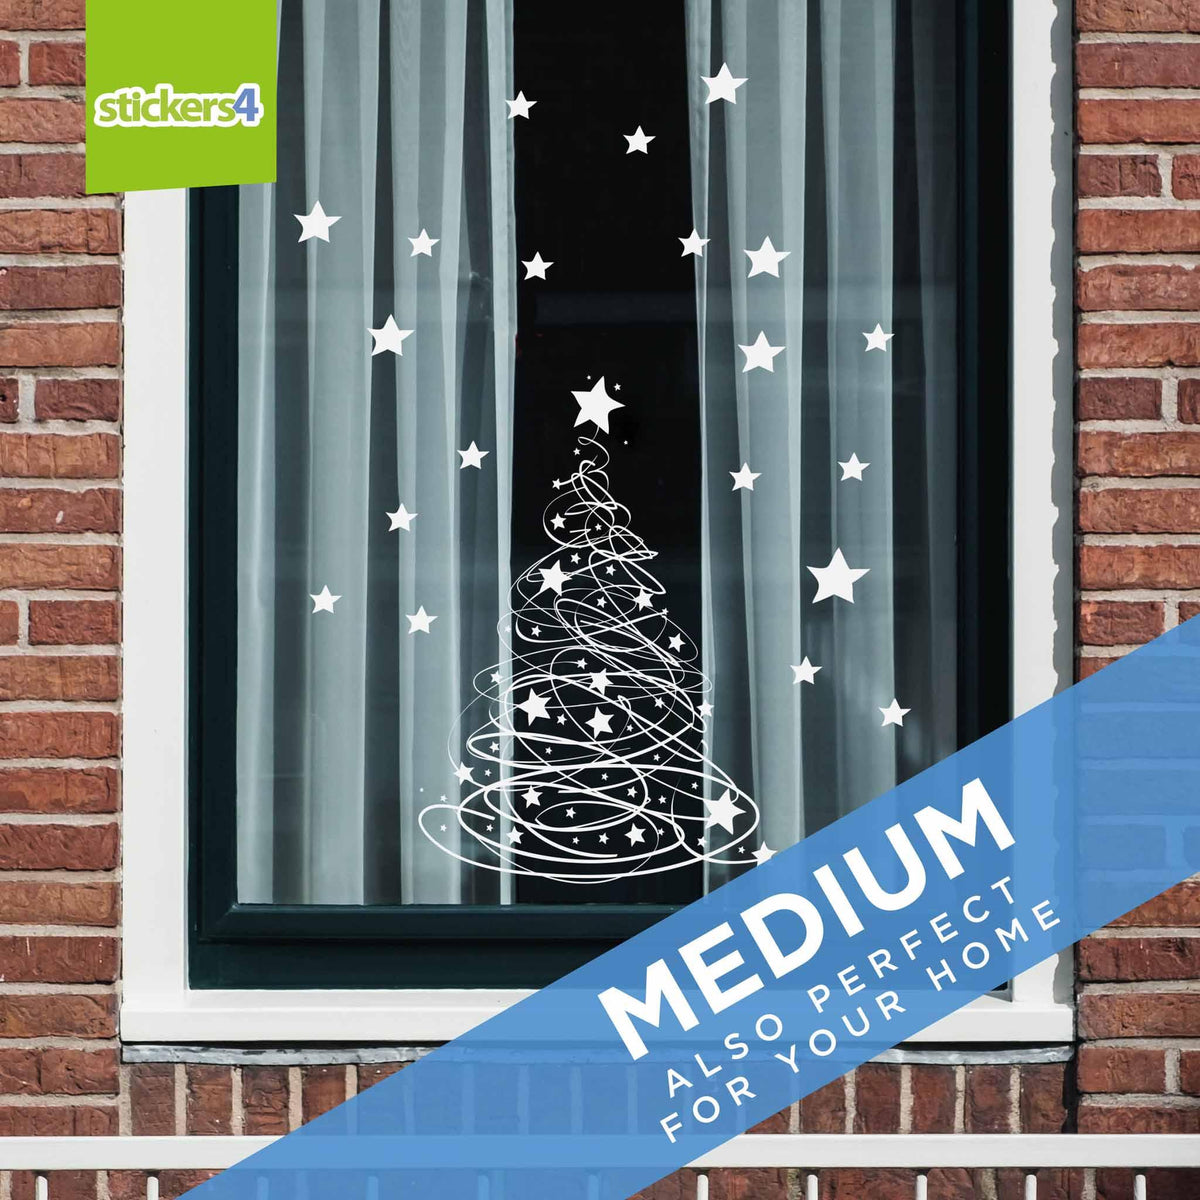 Swishy Tree Christmas Window Sticker - Now with Added STARS! Christmas Window Display